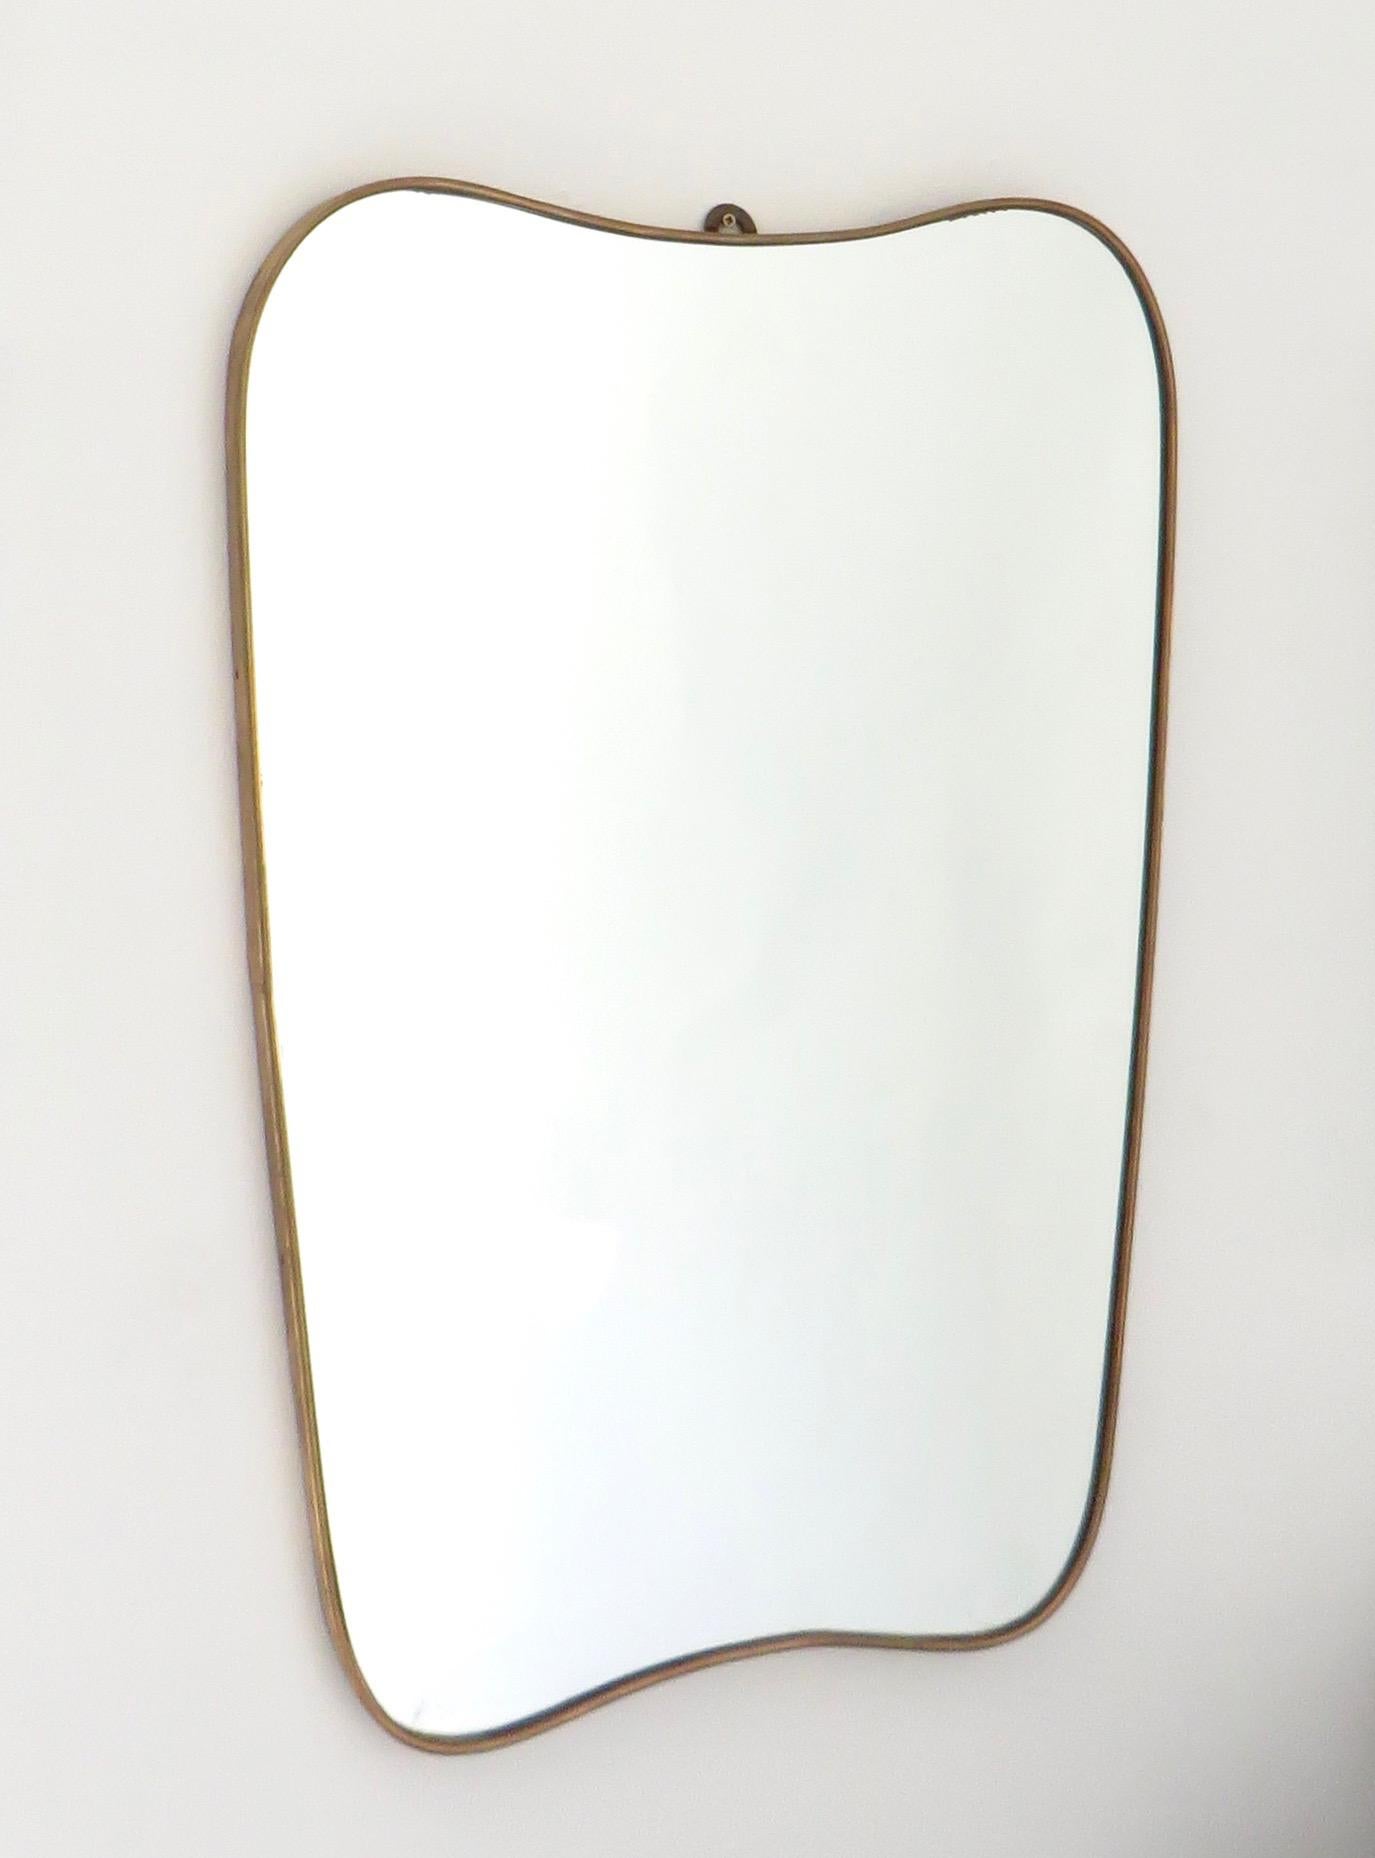 shield shaped mirror